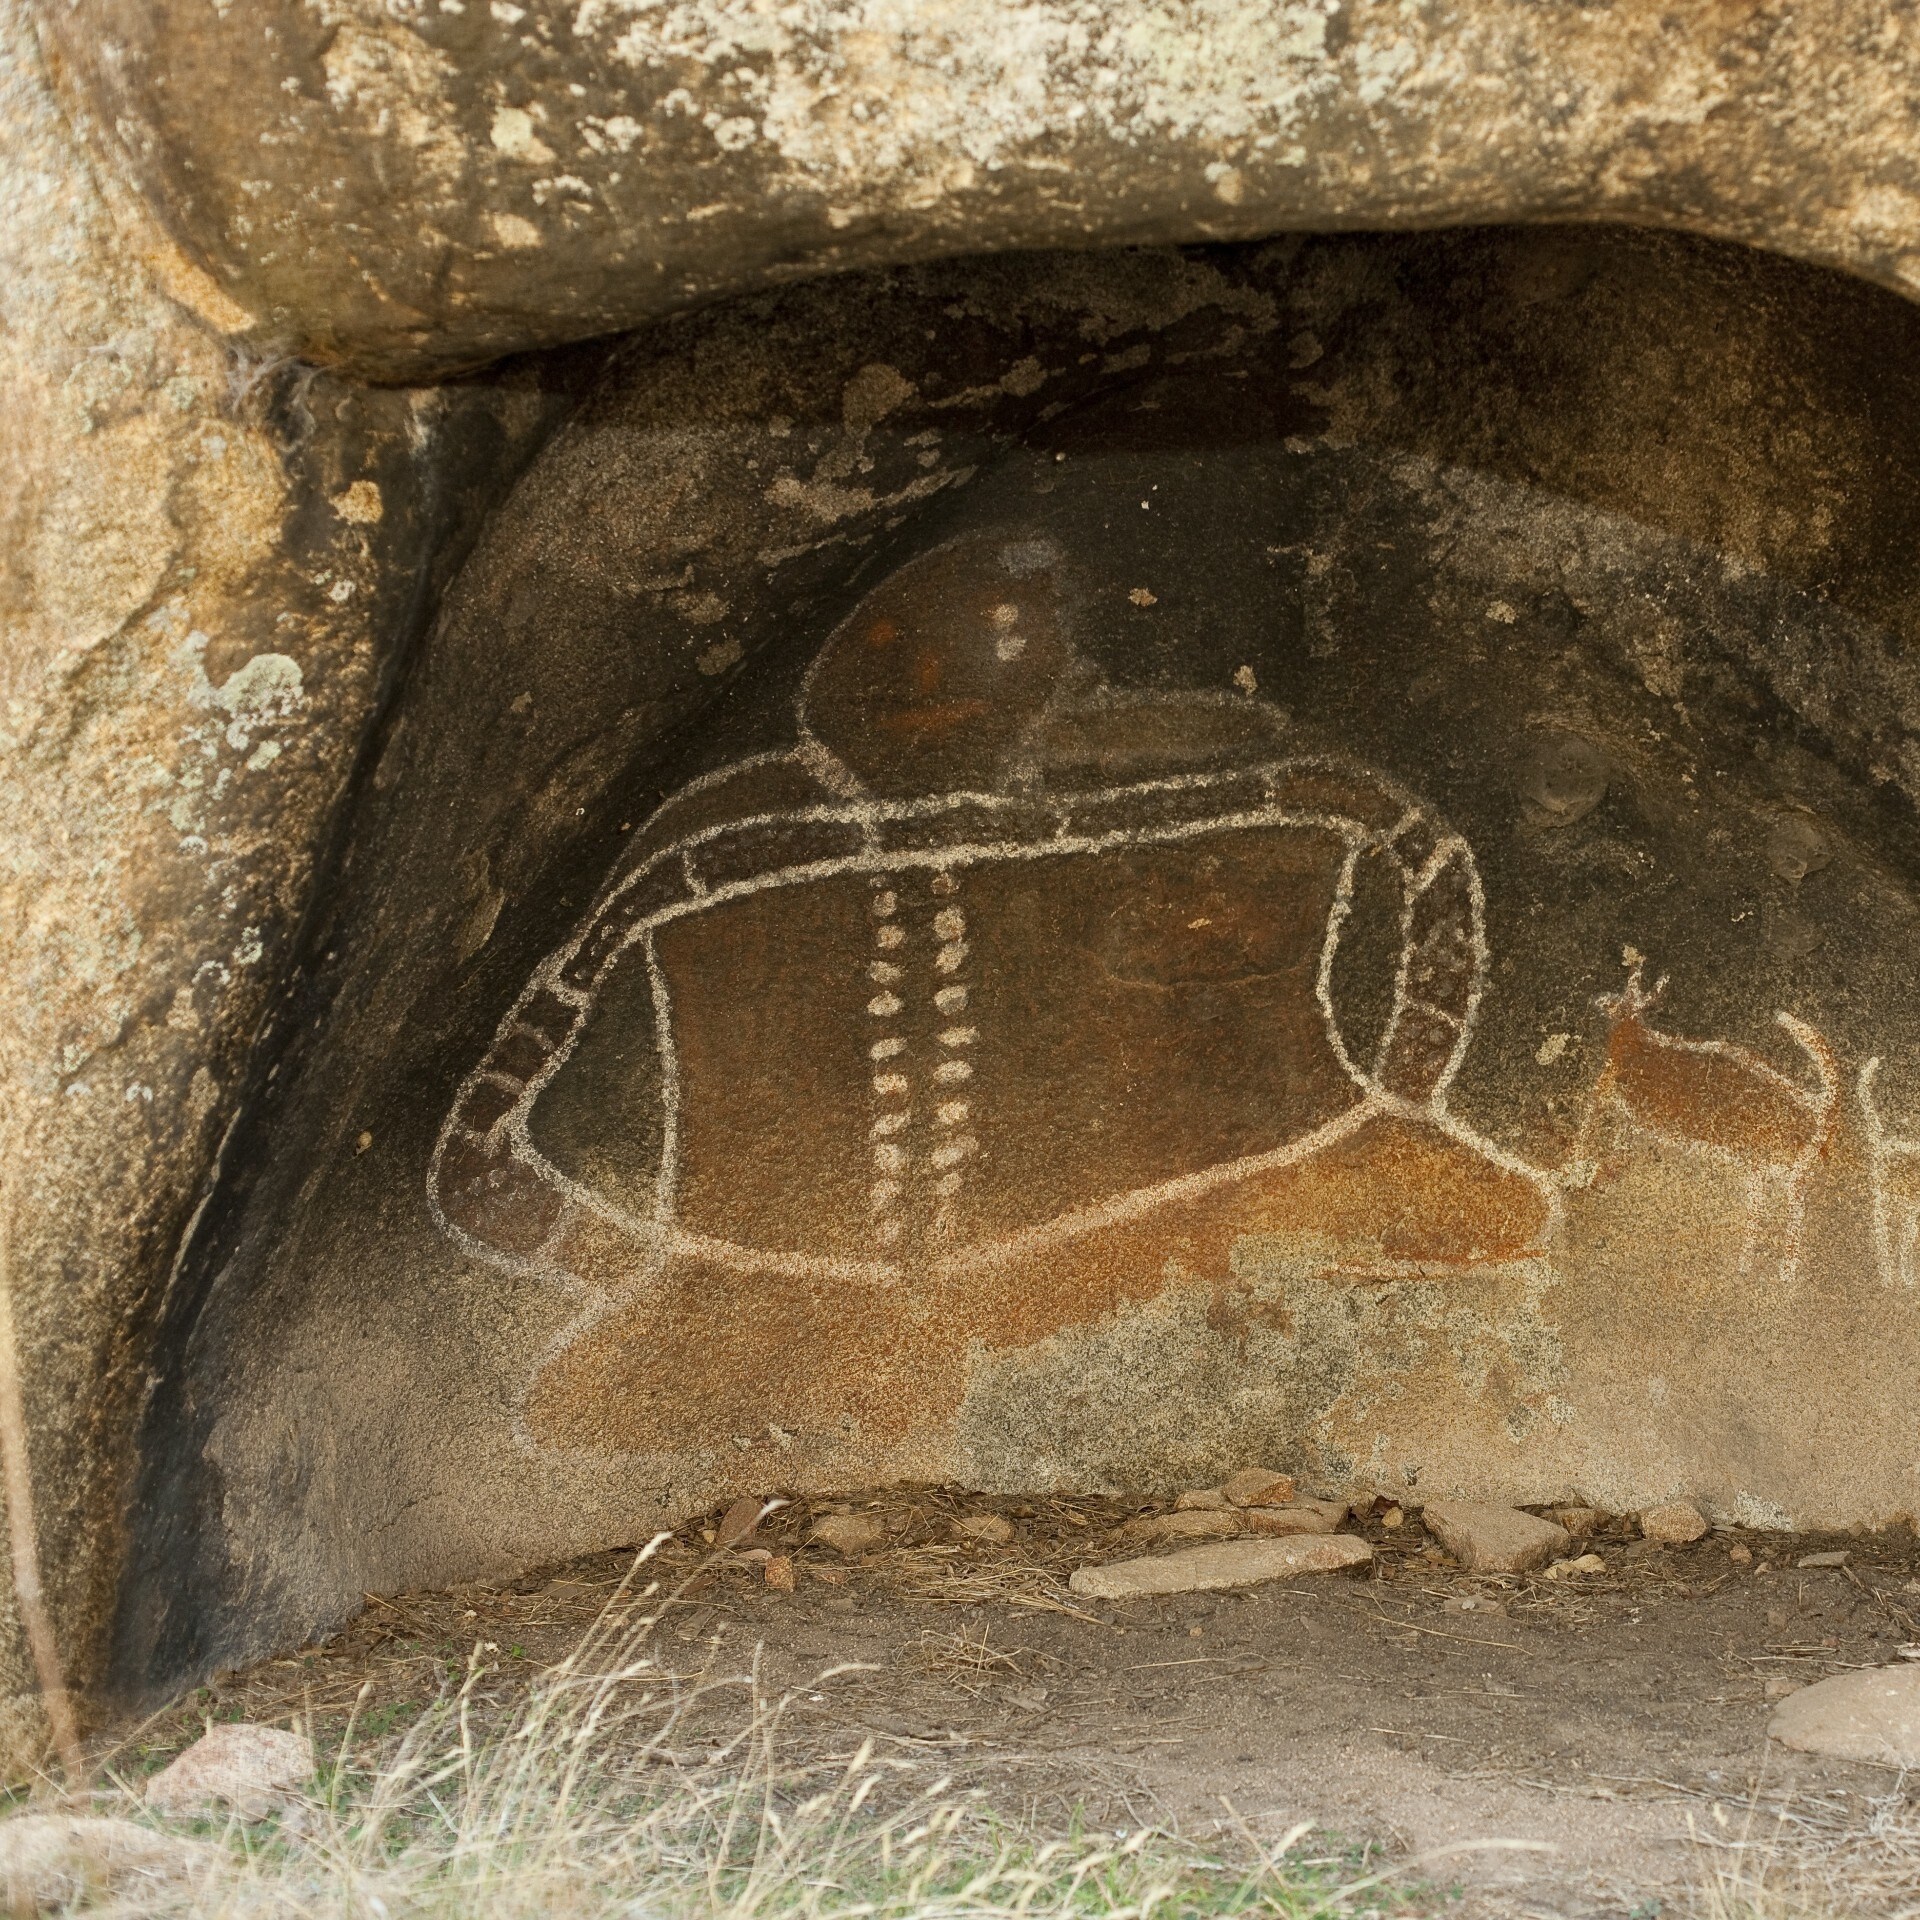 維多利亞格蘭坪山吉爾掩蔽處的岩石藝術©維多利亞旅遊局